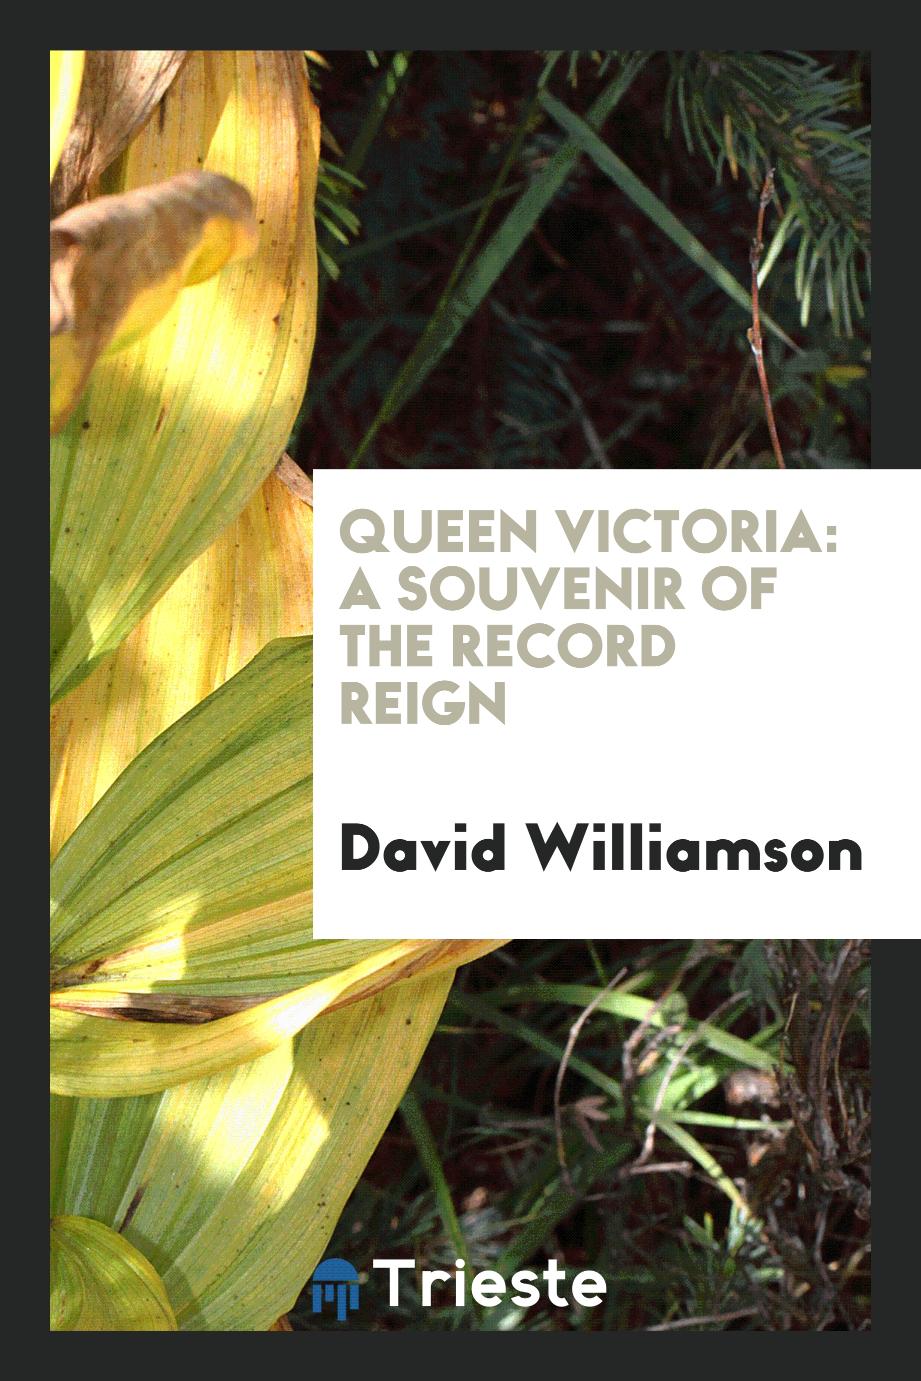 Queen Victoria: A Souvenir of the Record Reign